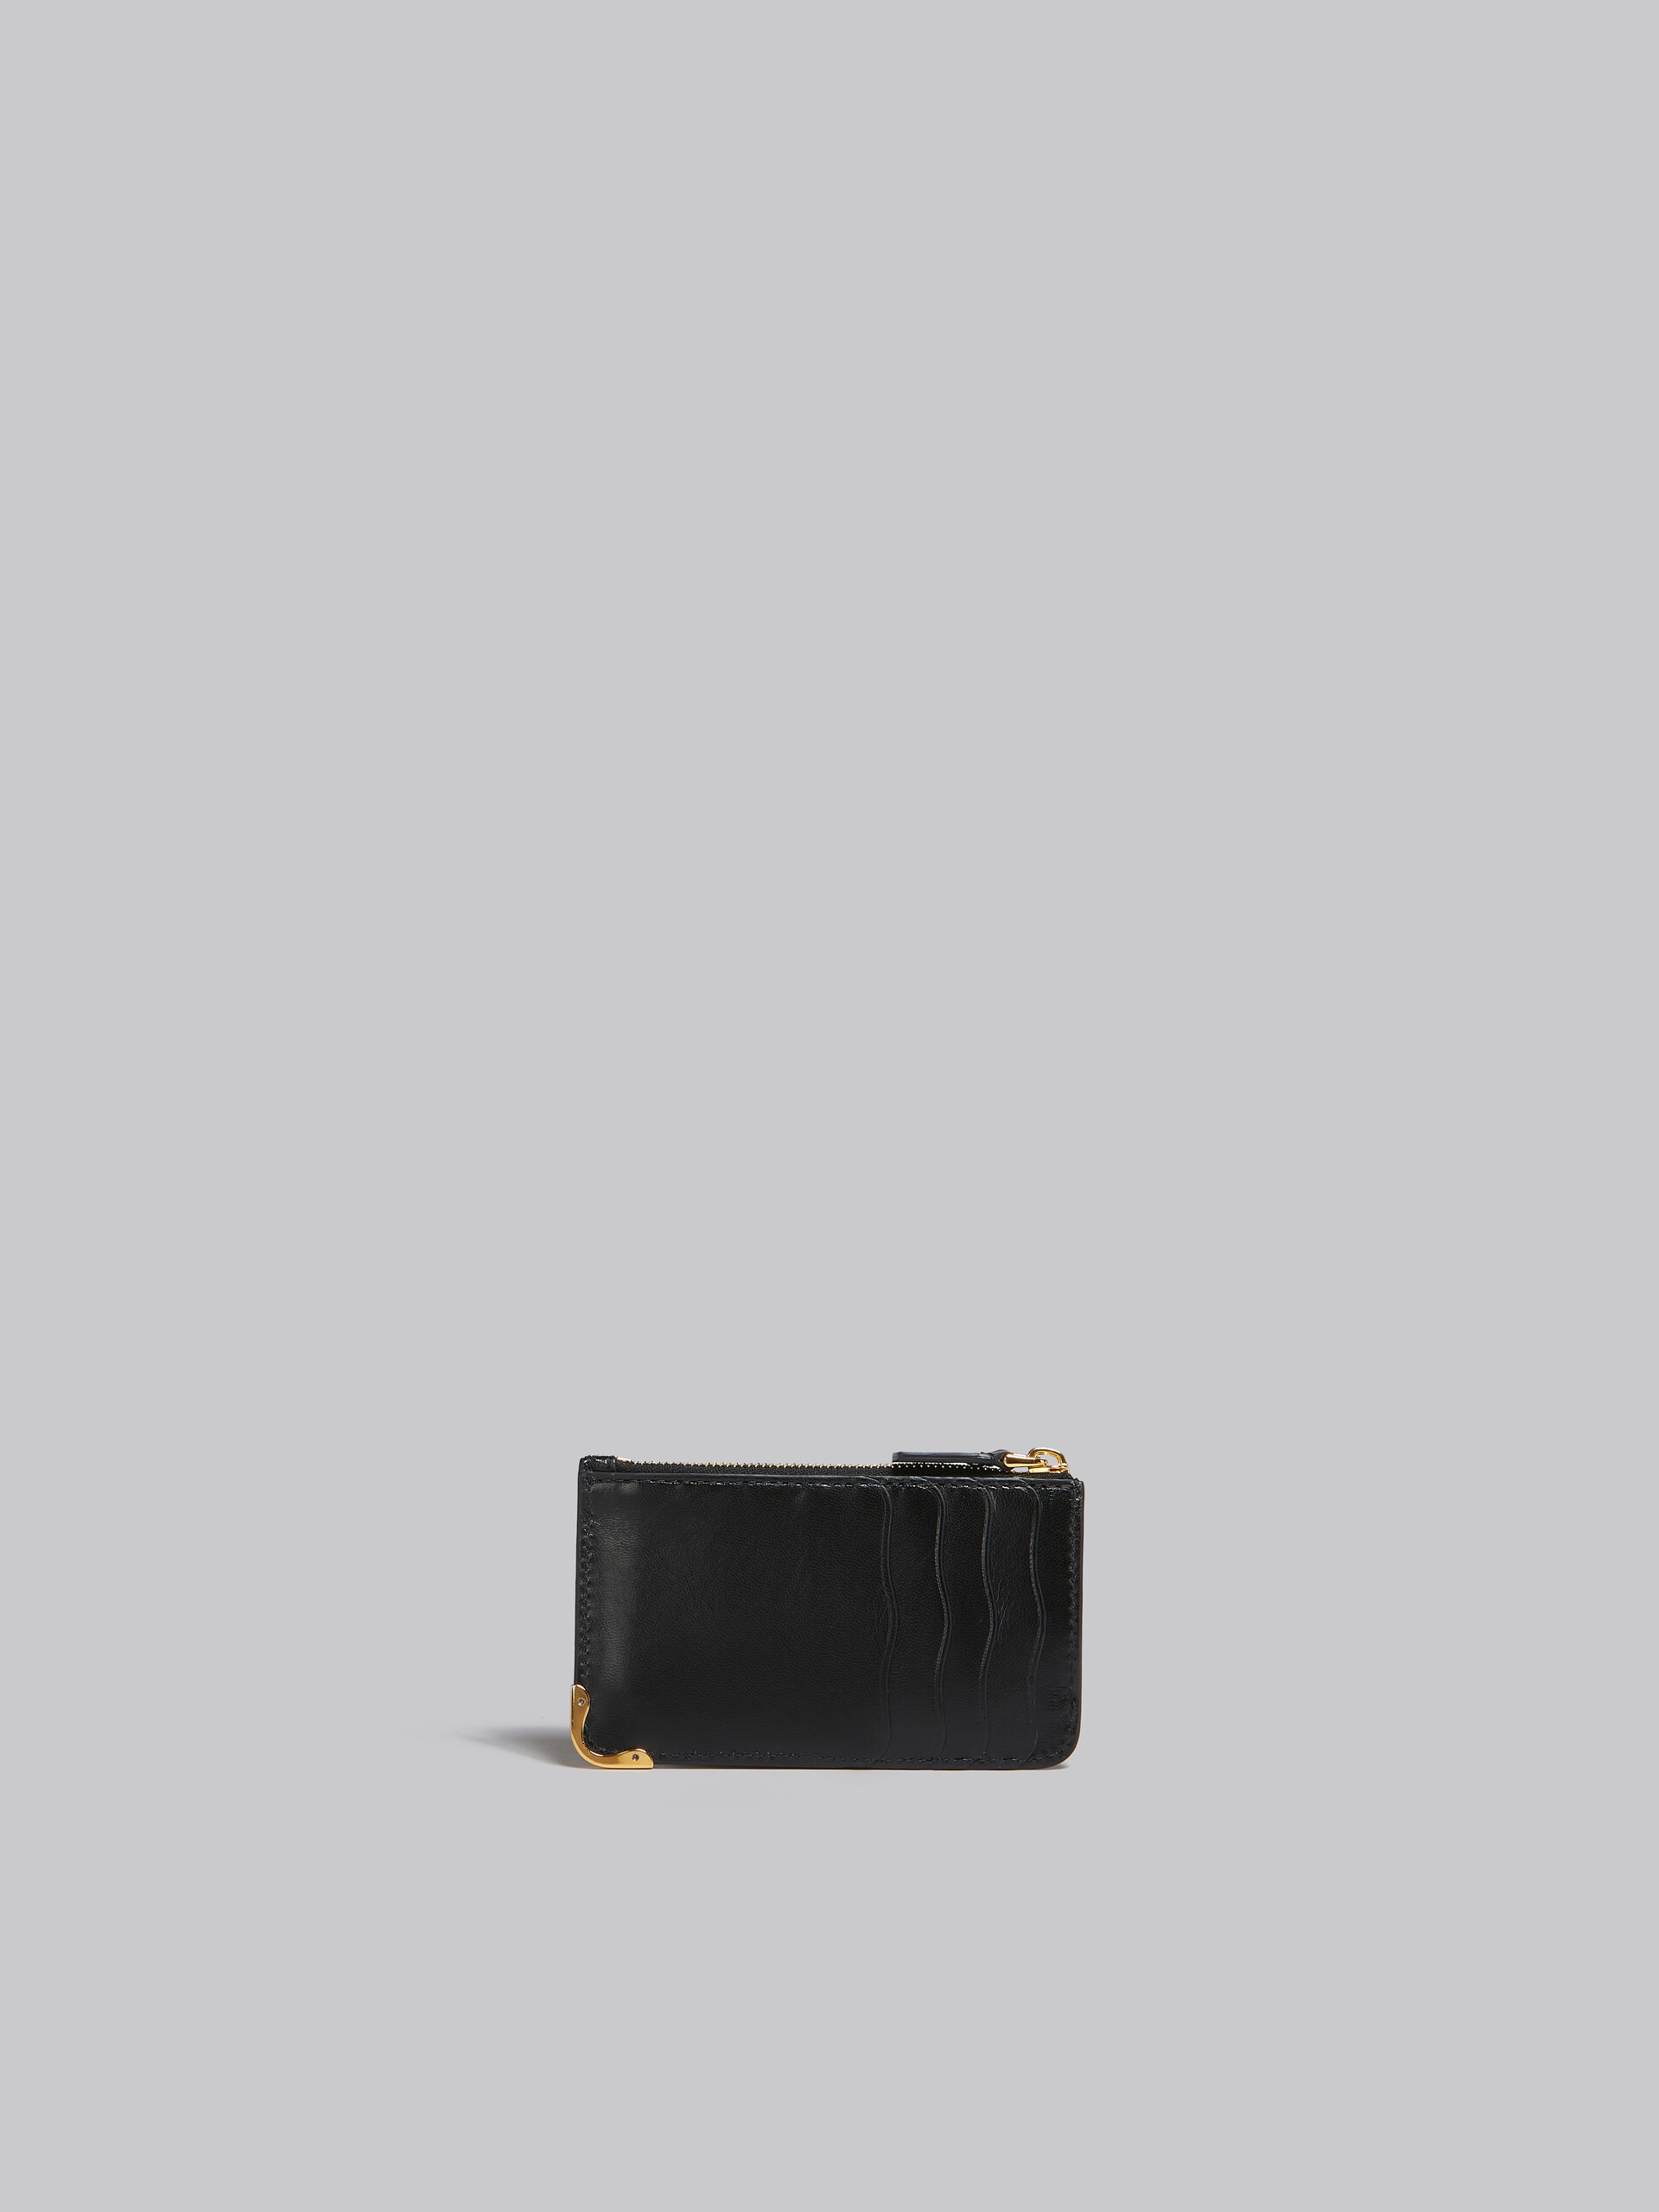 ブラック レザー製コインパース、ウエービースロット - 財布 - Image 3